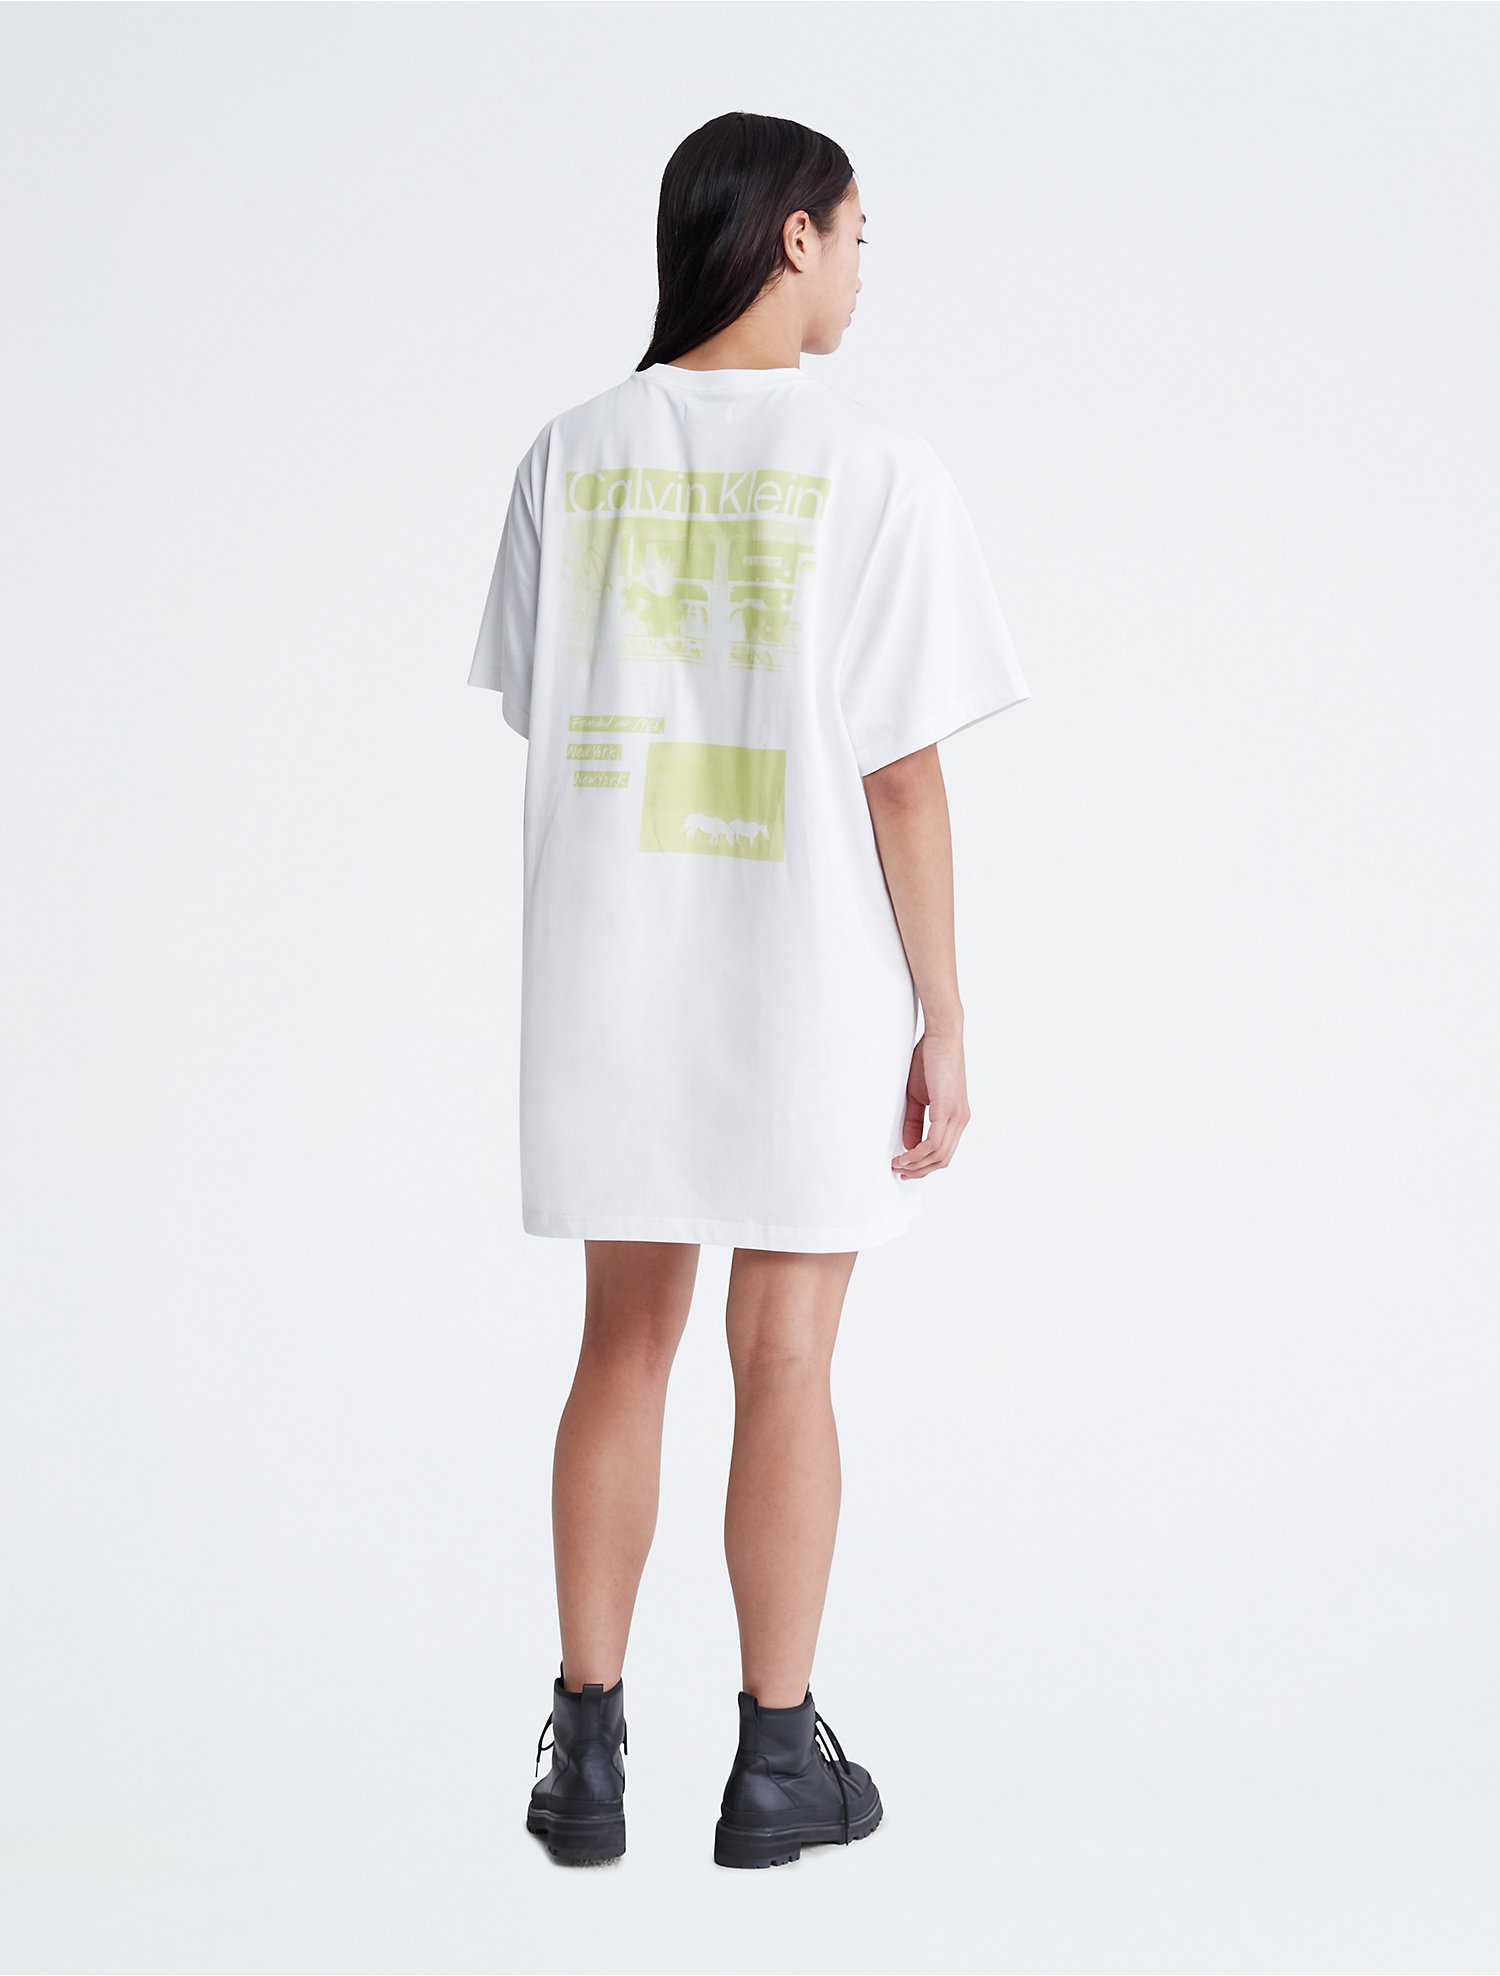 Standards Flyer Graphic T-Shirt Dress | Calvin Klein® USA